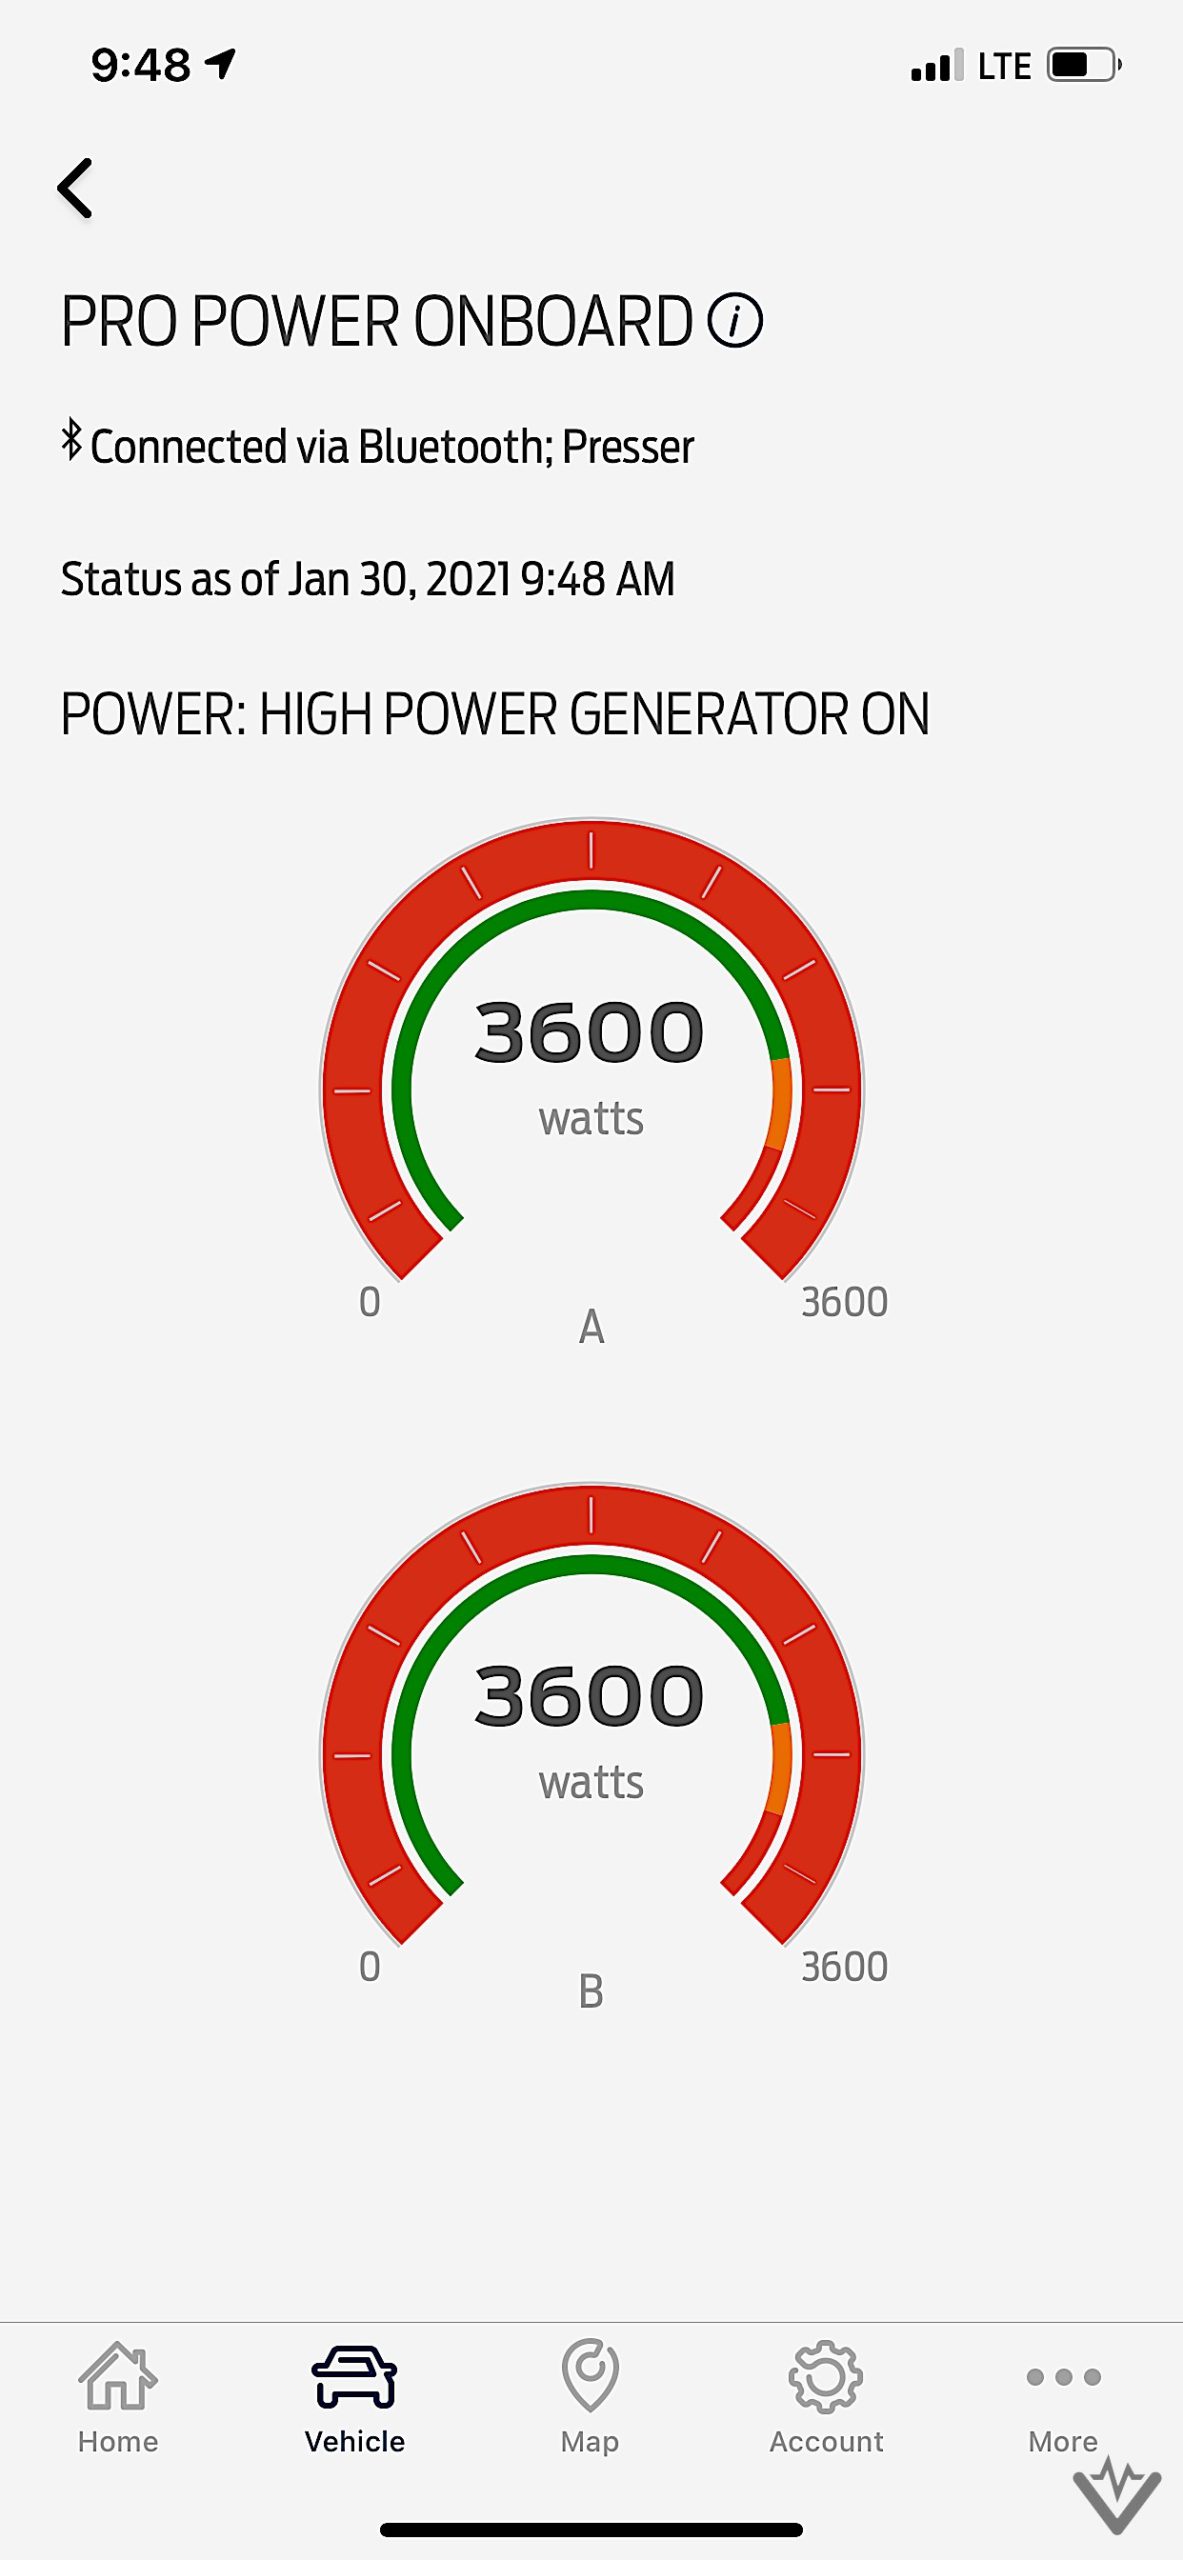 Pro Power Onboard generator test IMG 2383